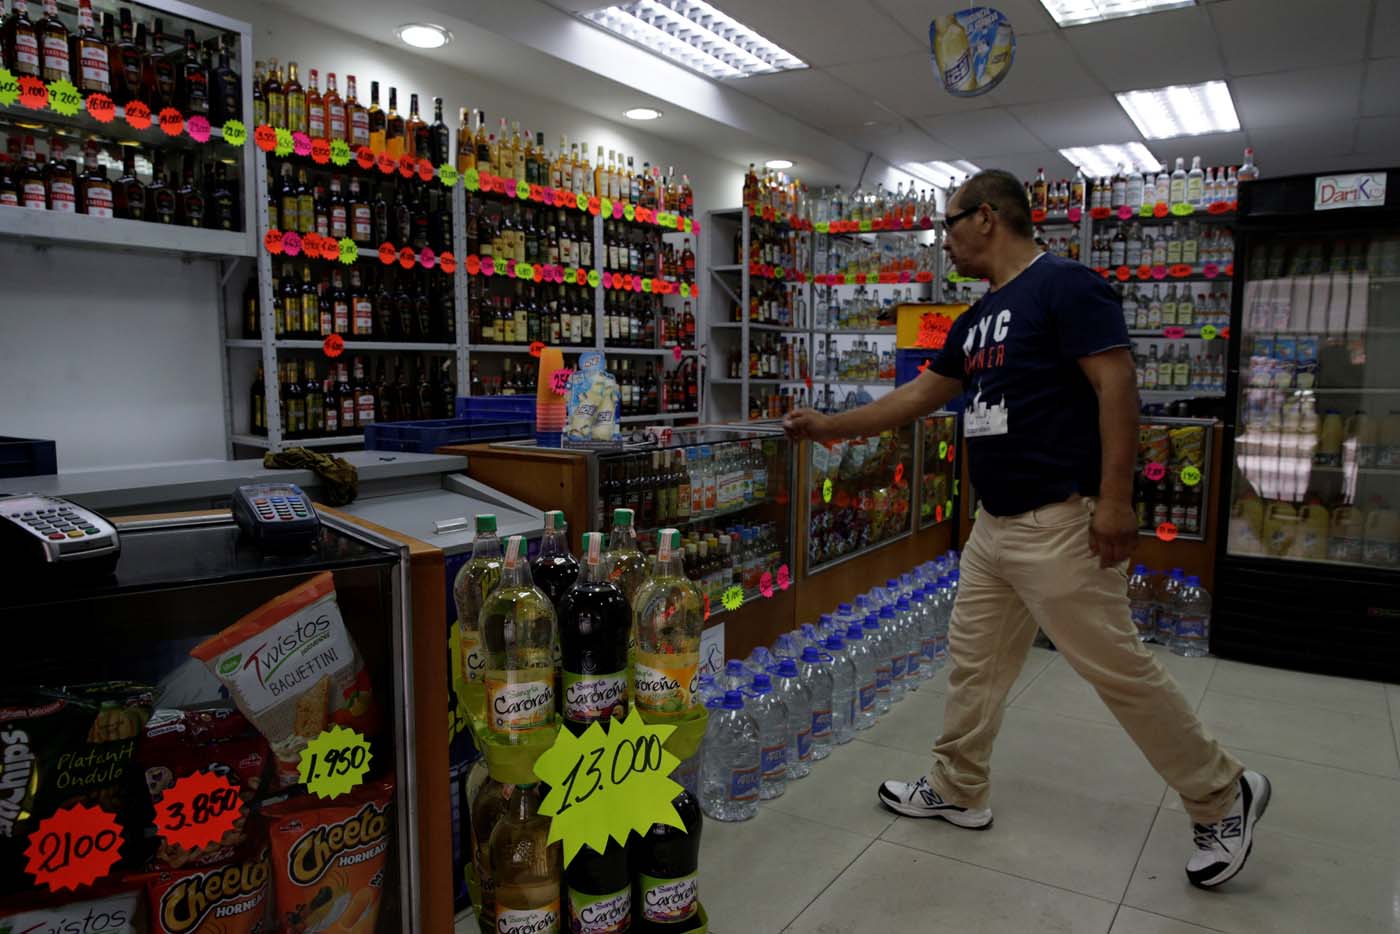 Prohibición de alcohol durante el show electoral, otra norma desoída en Venezuela